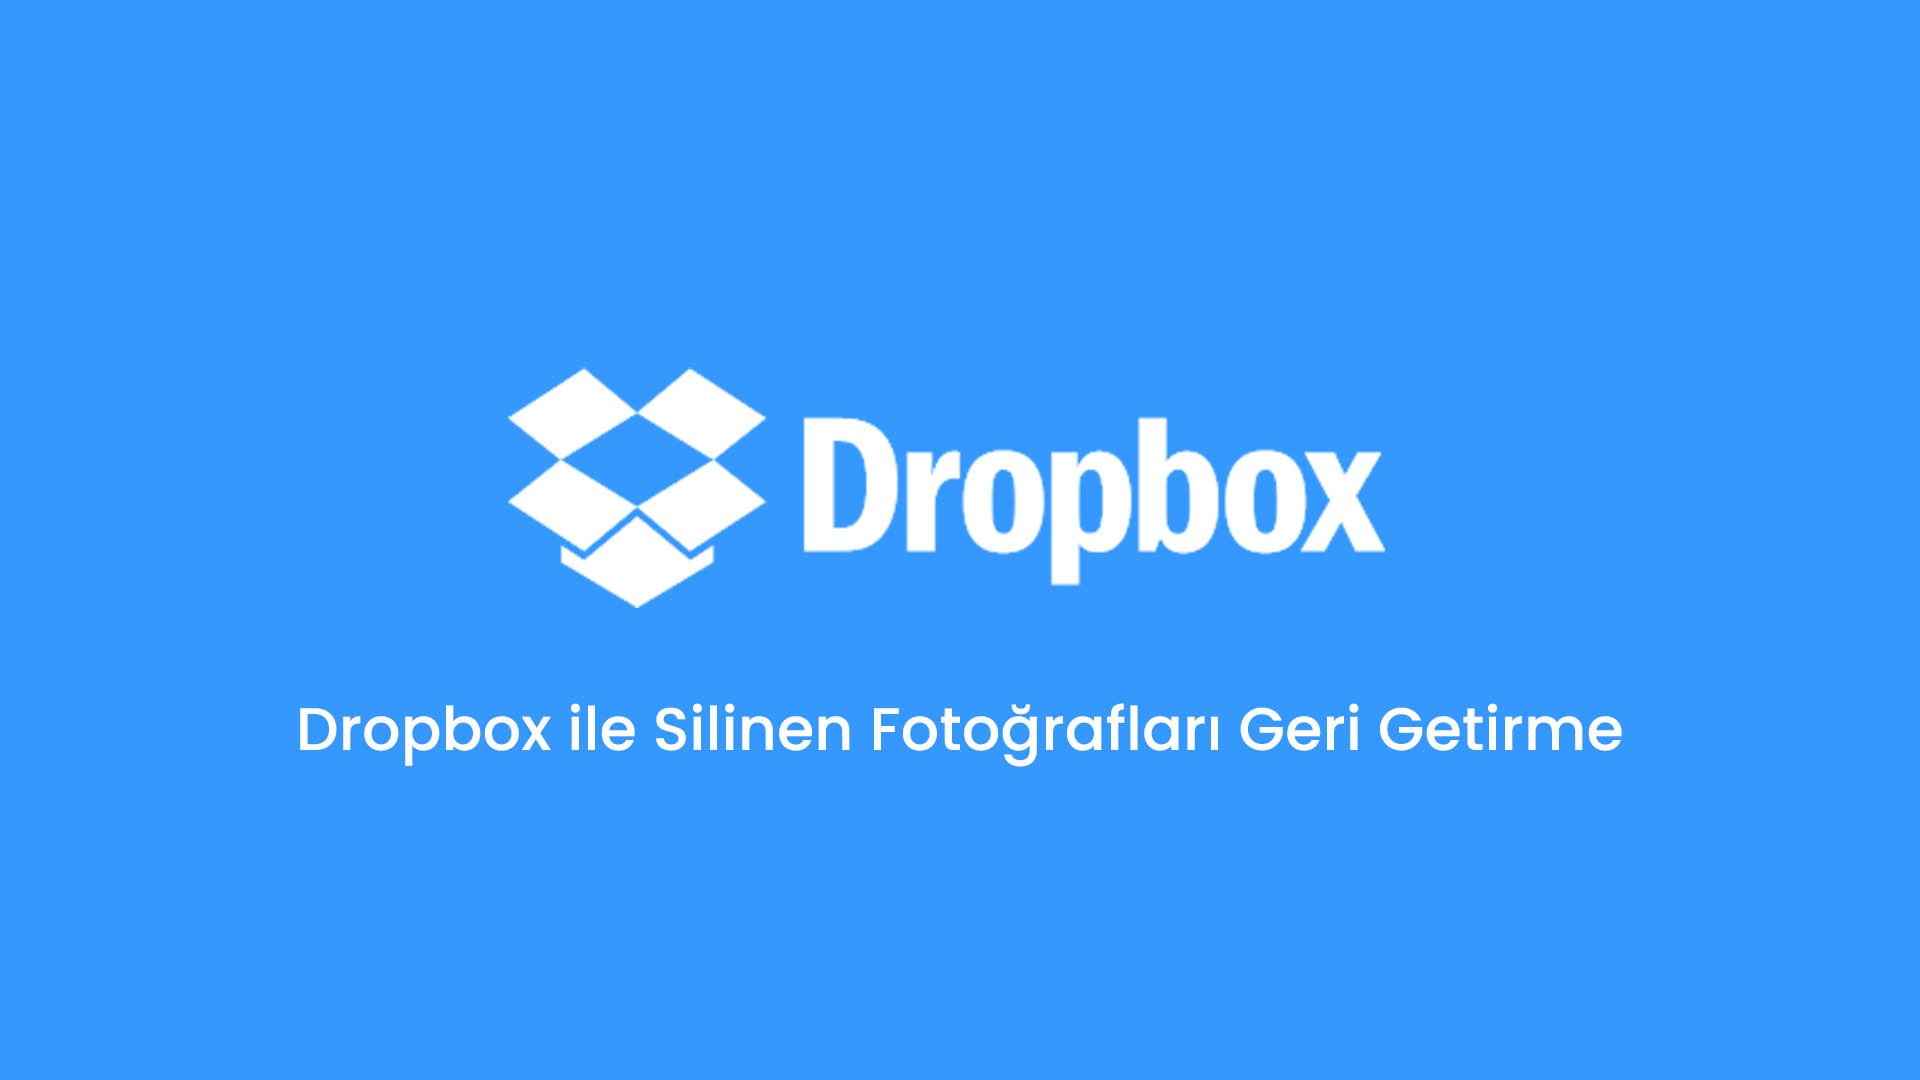 Dropbox ile Silinen Fotoğrafları Geri Getirme